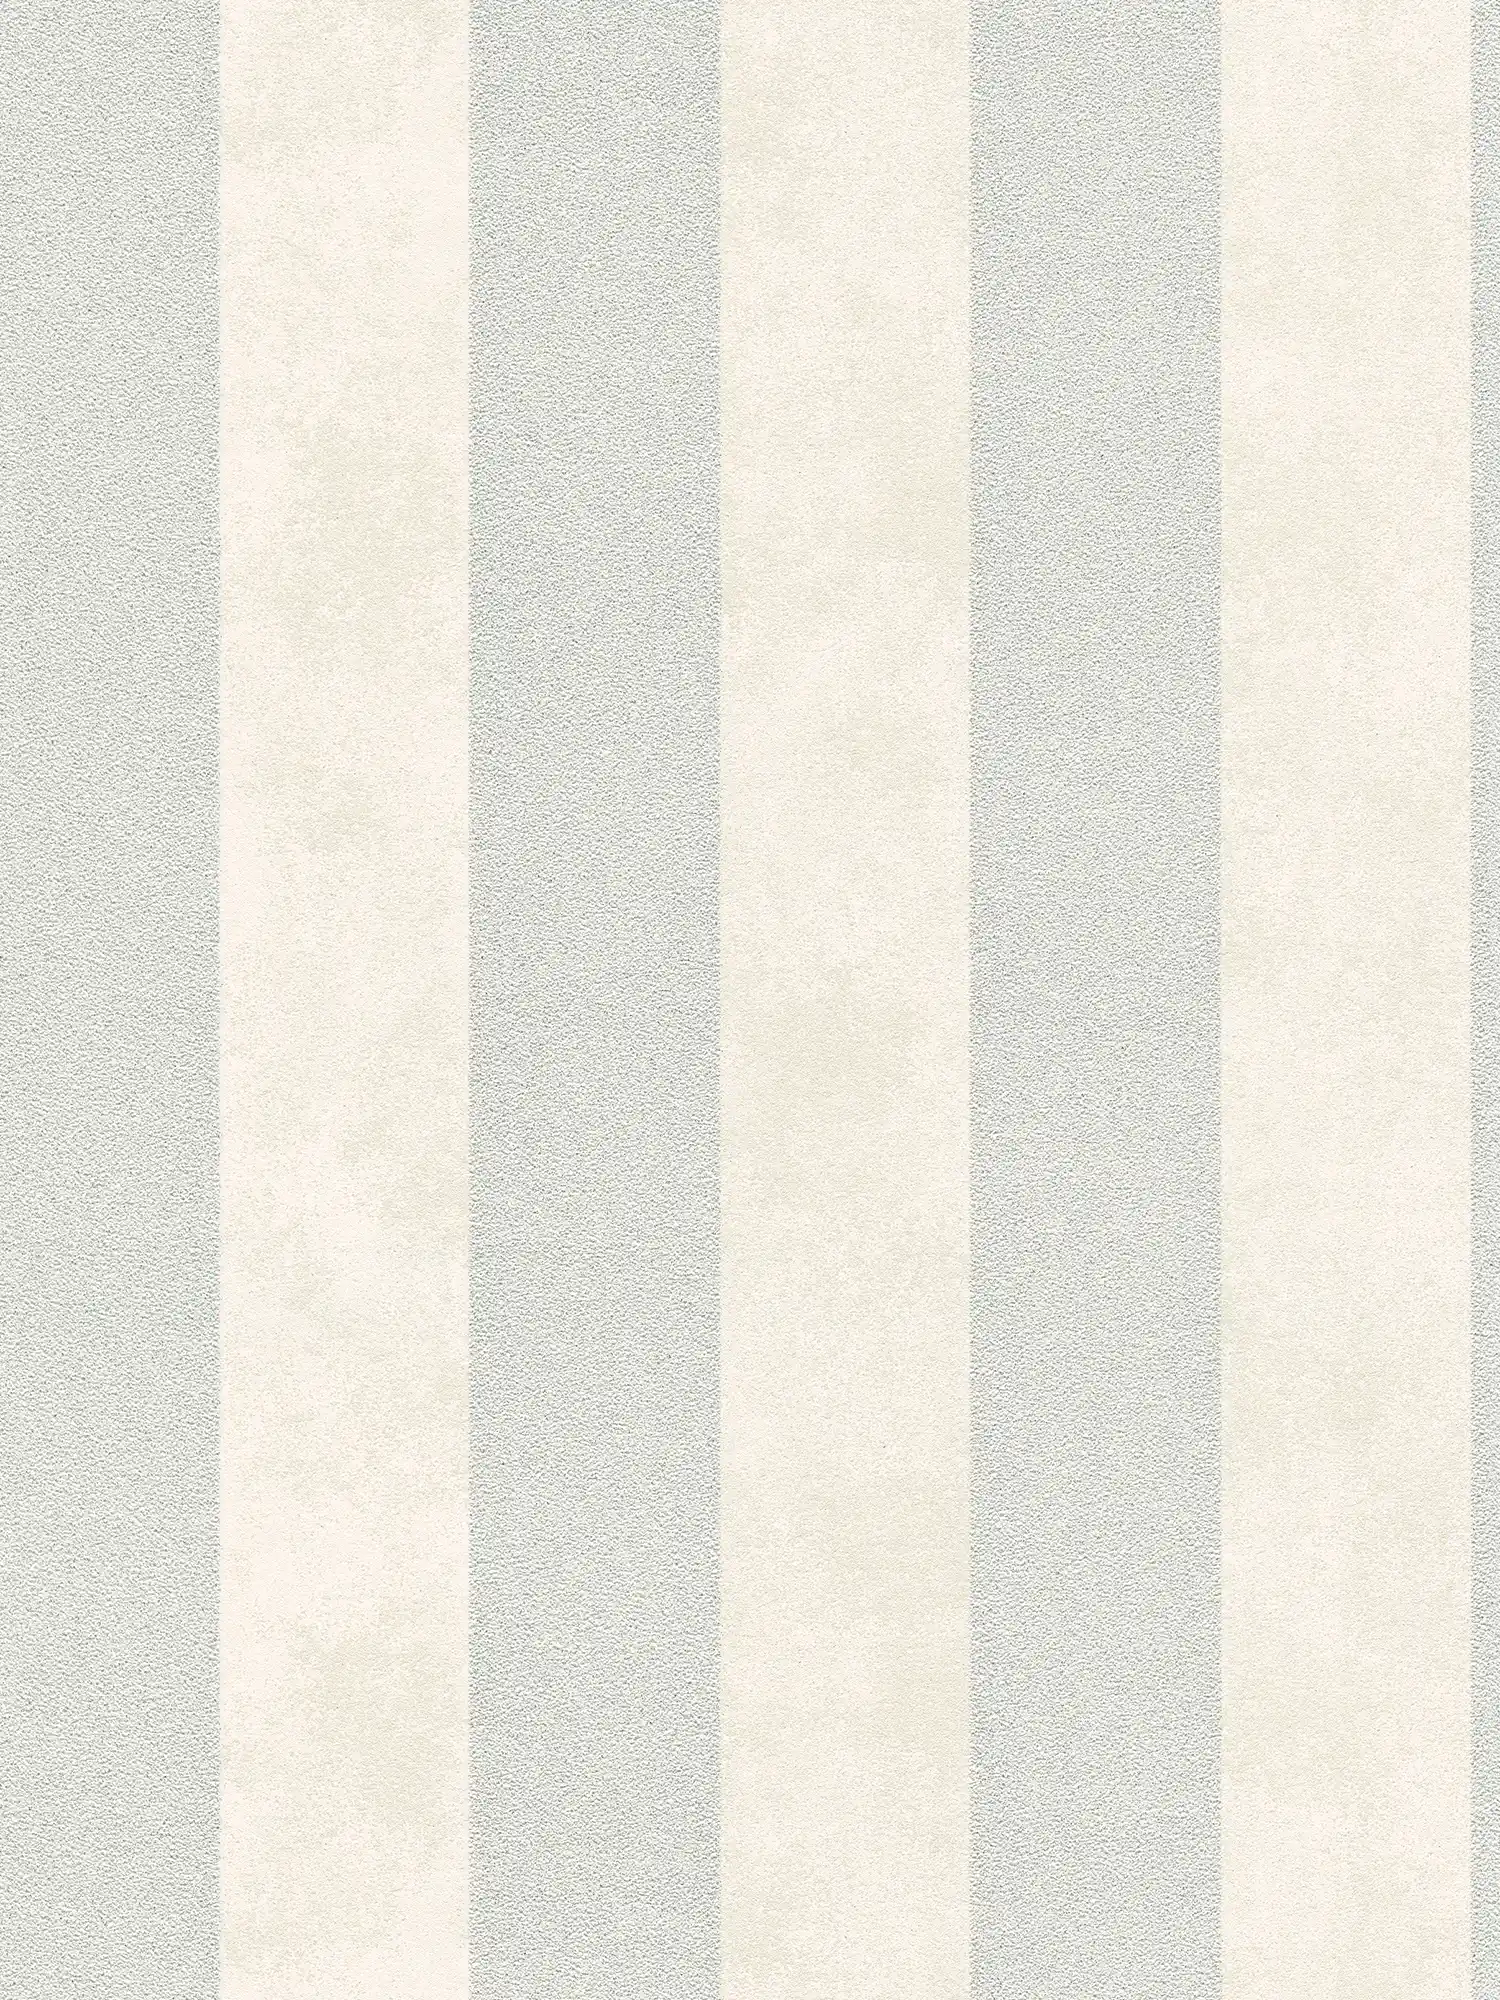 Papier peint à rayures en bloc avec motifs colorés et texturés - argenté, gris, blanc
